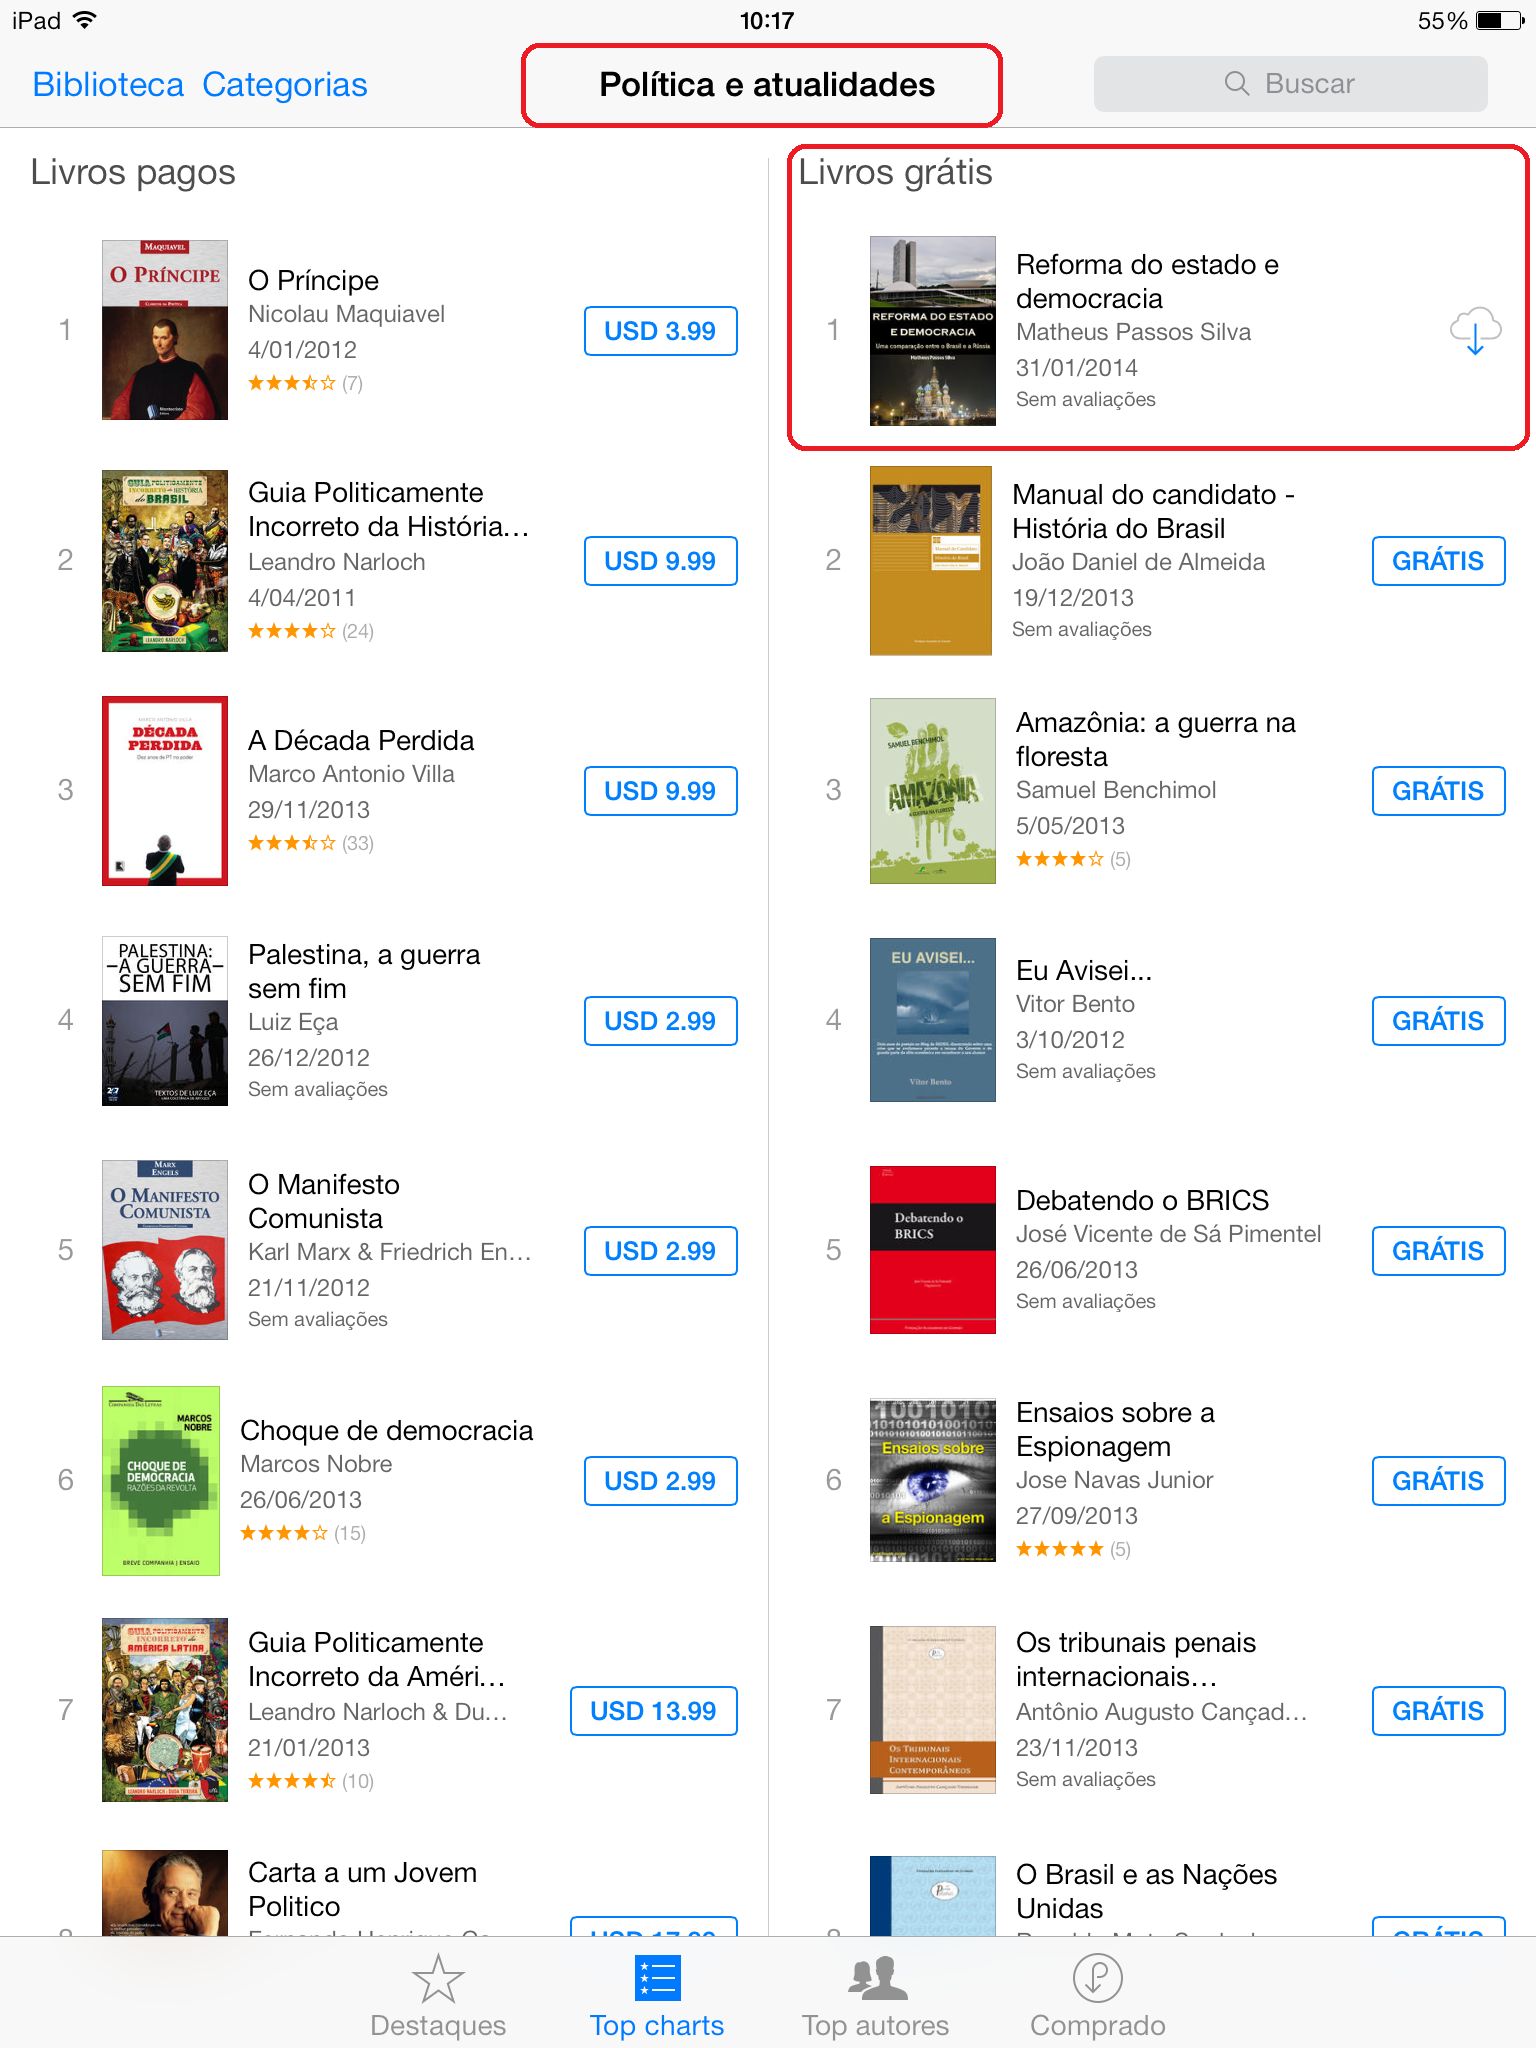 Nº 1 em downloads na iBooks Store na categoria "Política e atualidades"